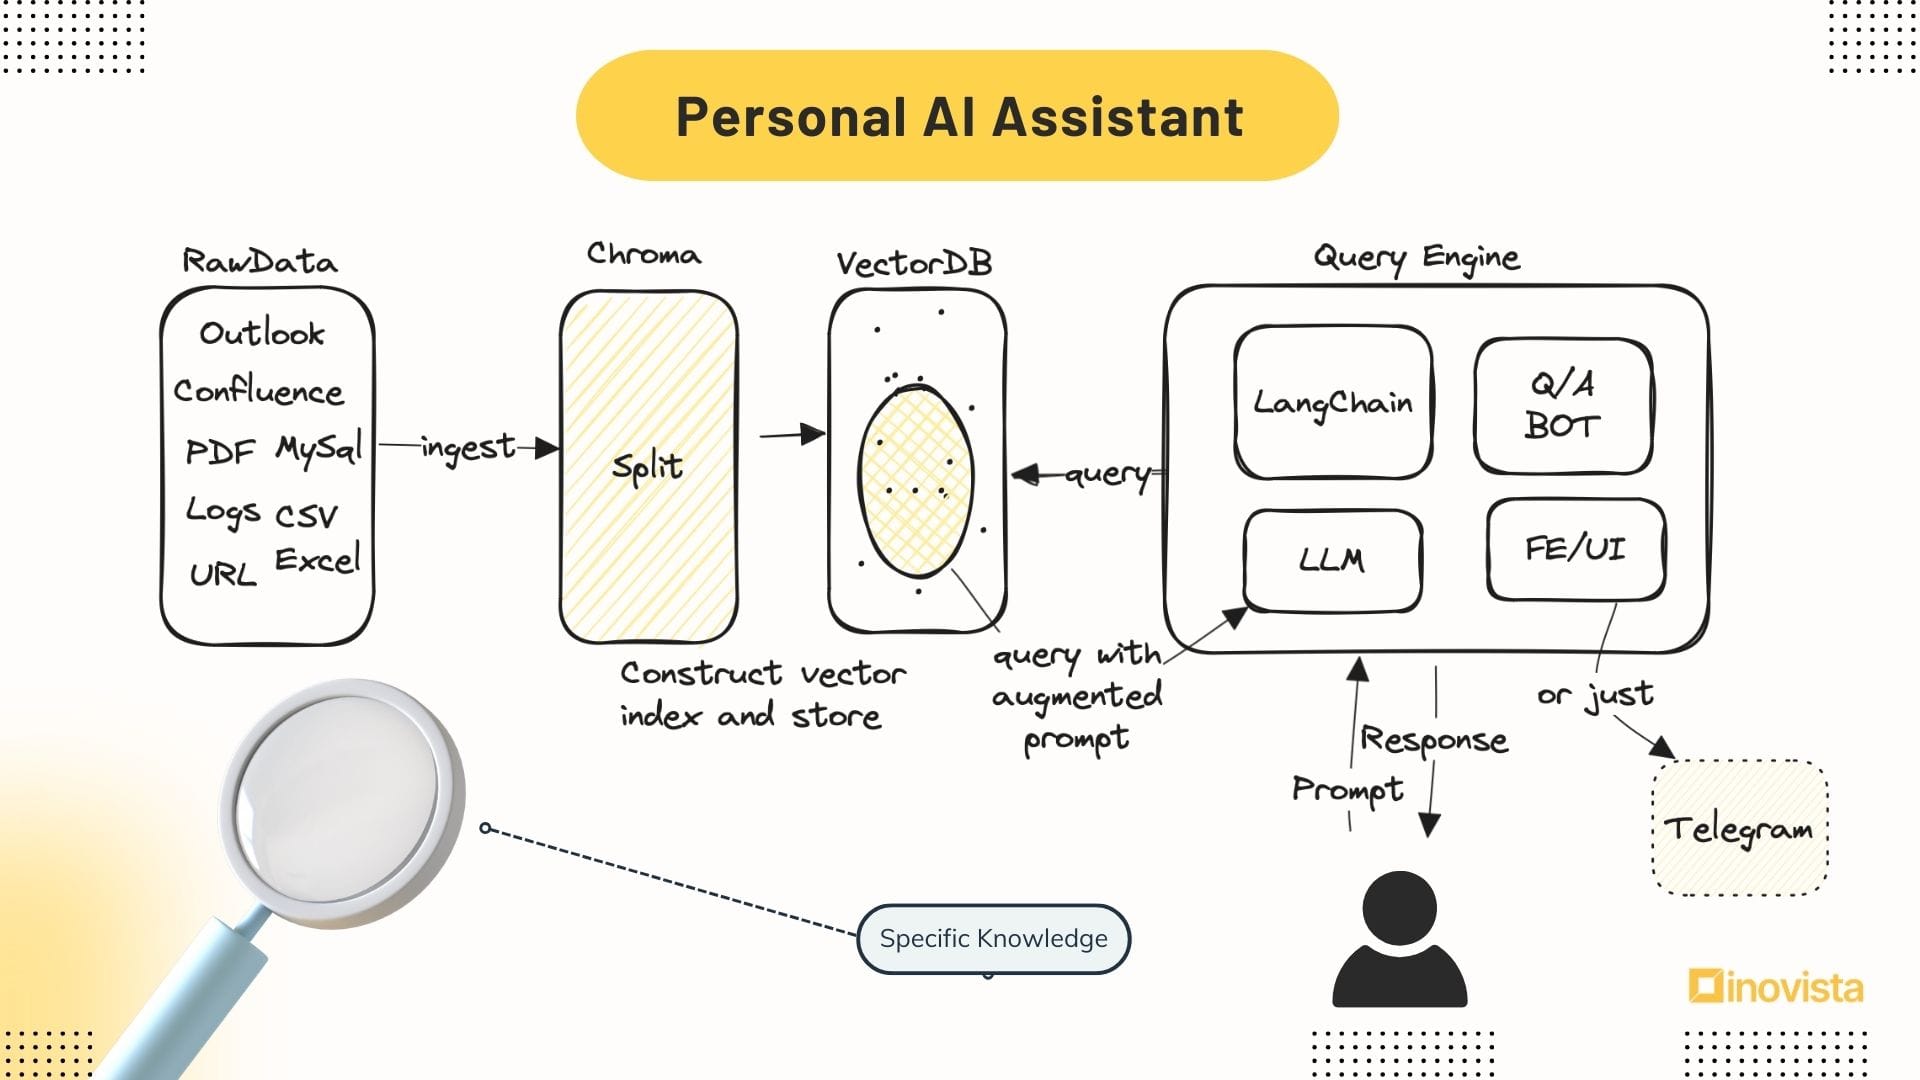 Guida Passo-Passo: Costruisci il tuo Chatbot Autodidatta con RAG e AI